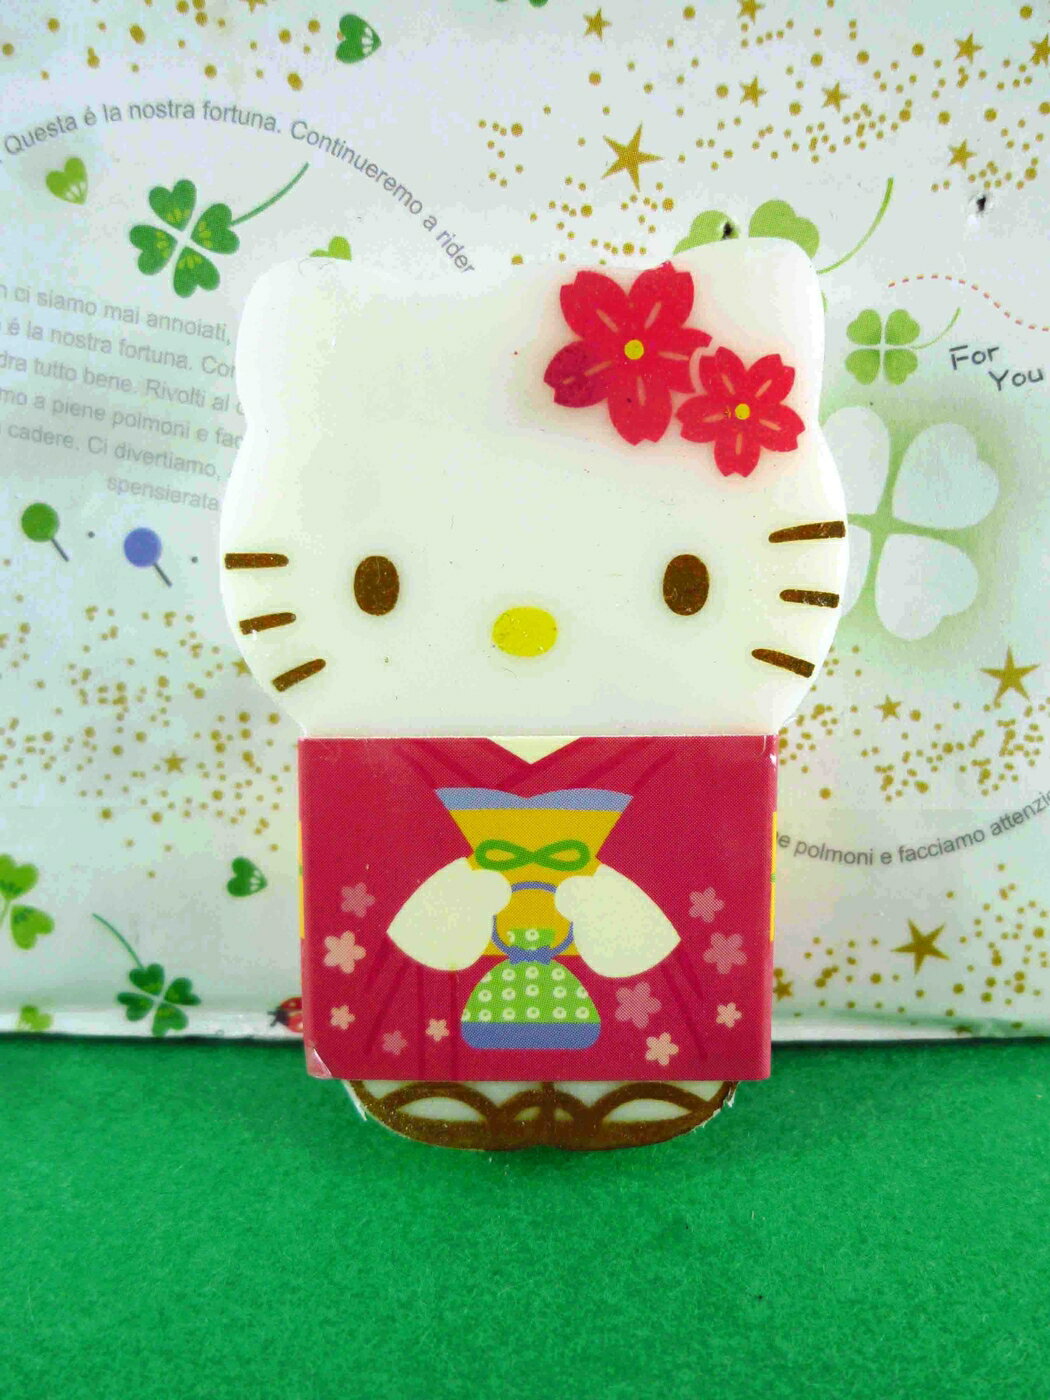 【震撼精品百貨】Hello Kitty 凱蒂貓 造型橡皮擦-紅和風 震撼日式精品百貨